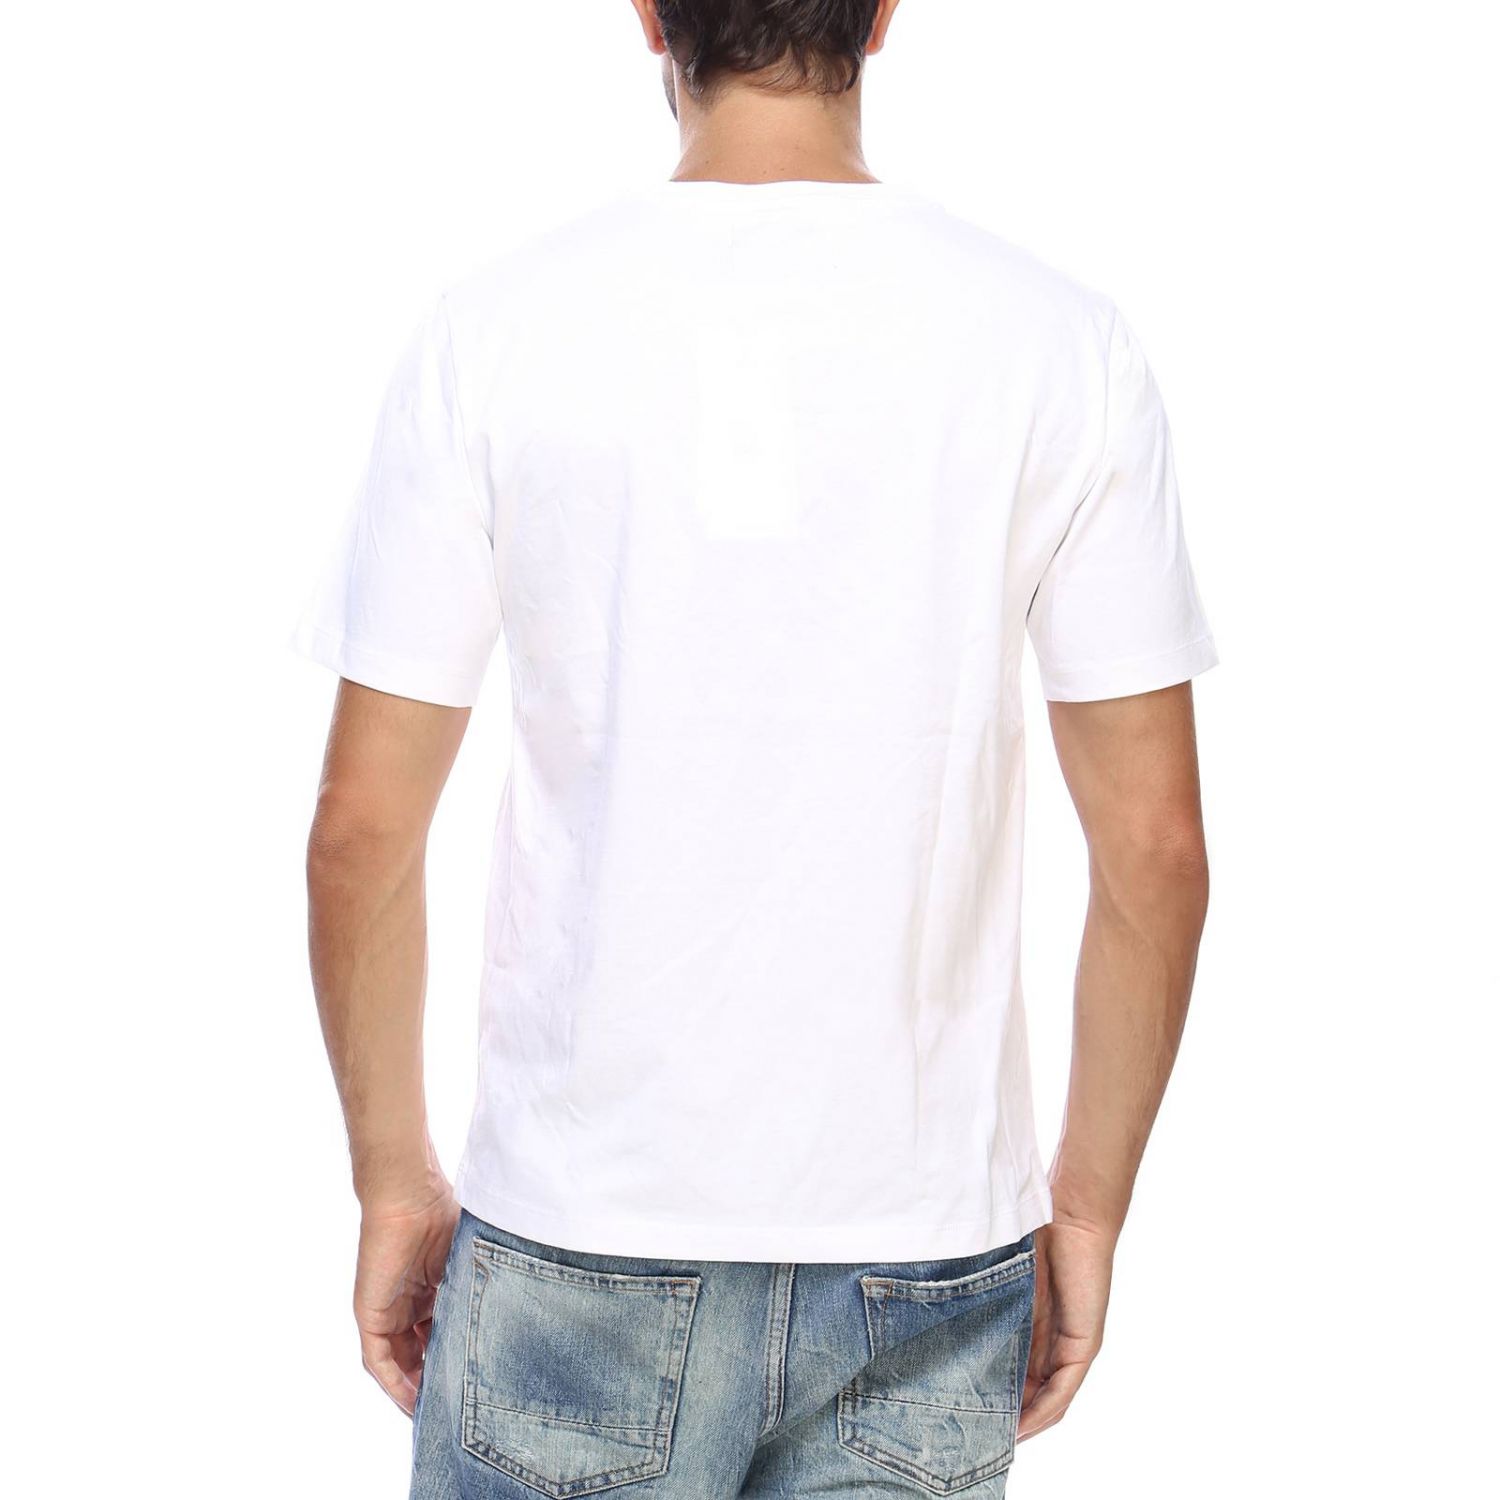 Ckj Warhol Self-Portrait Outlet: T-shirt men - White | T-Shirt Ckj ...